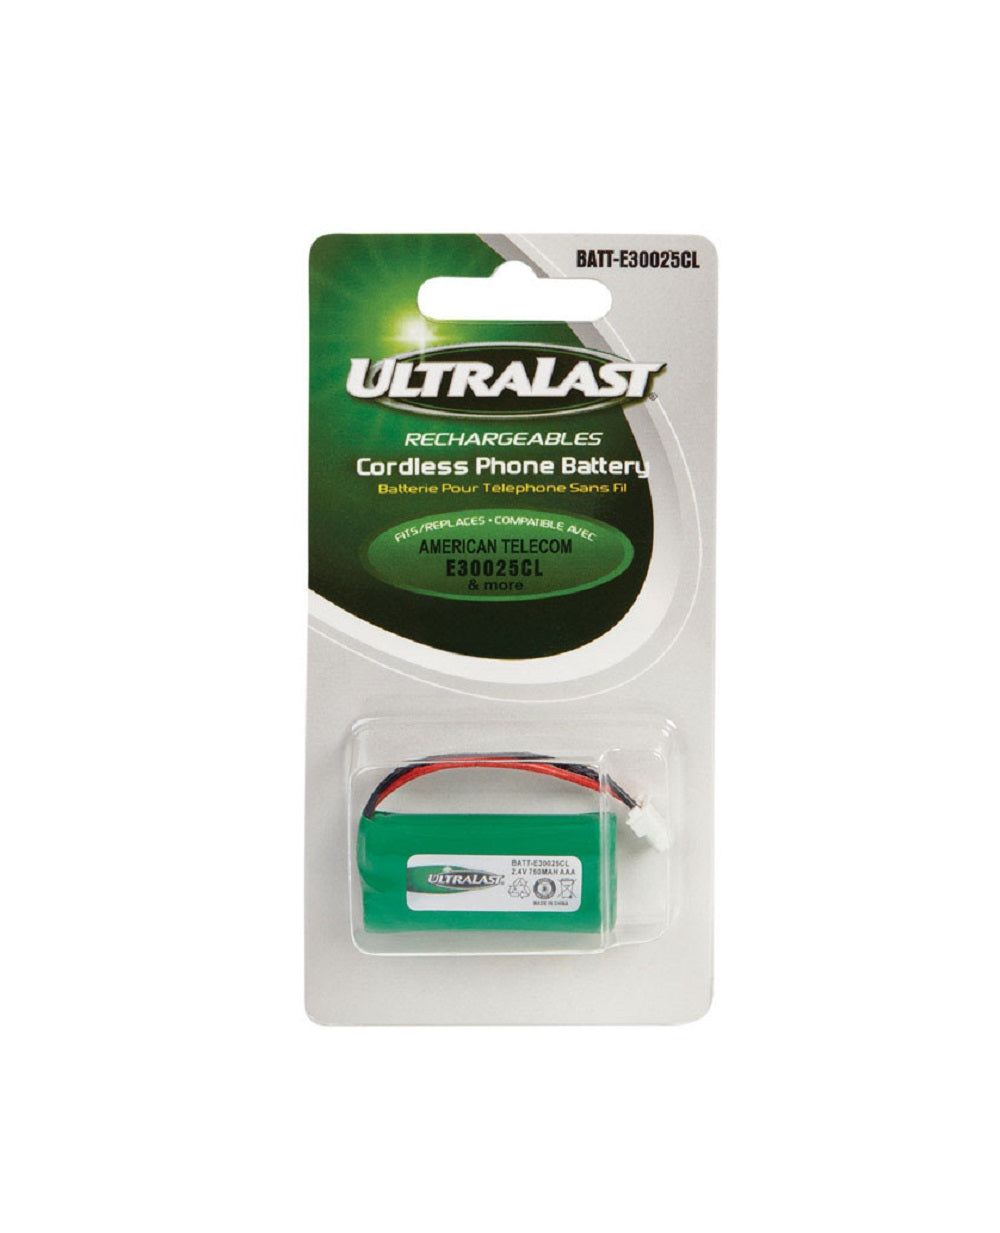 Ultralast BATT-E30025CL NiMH Cordless Phone Battery, 2.4 V, 750 Ah